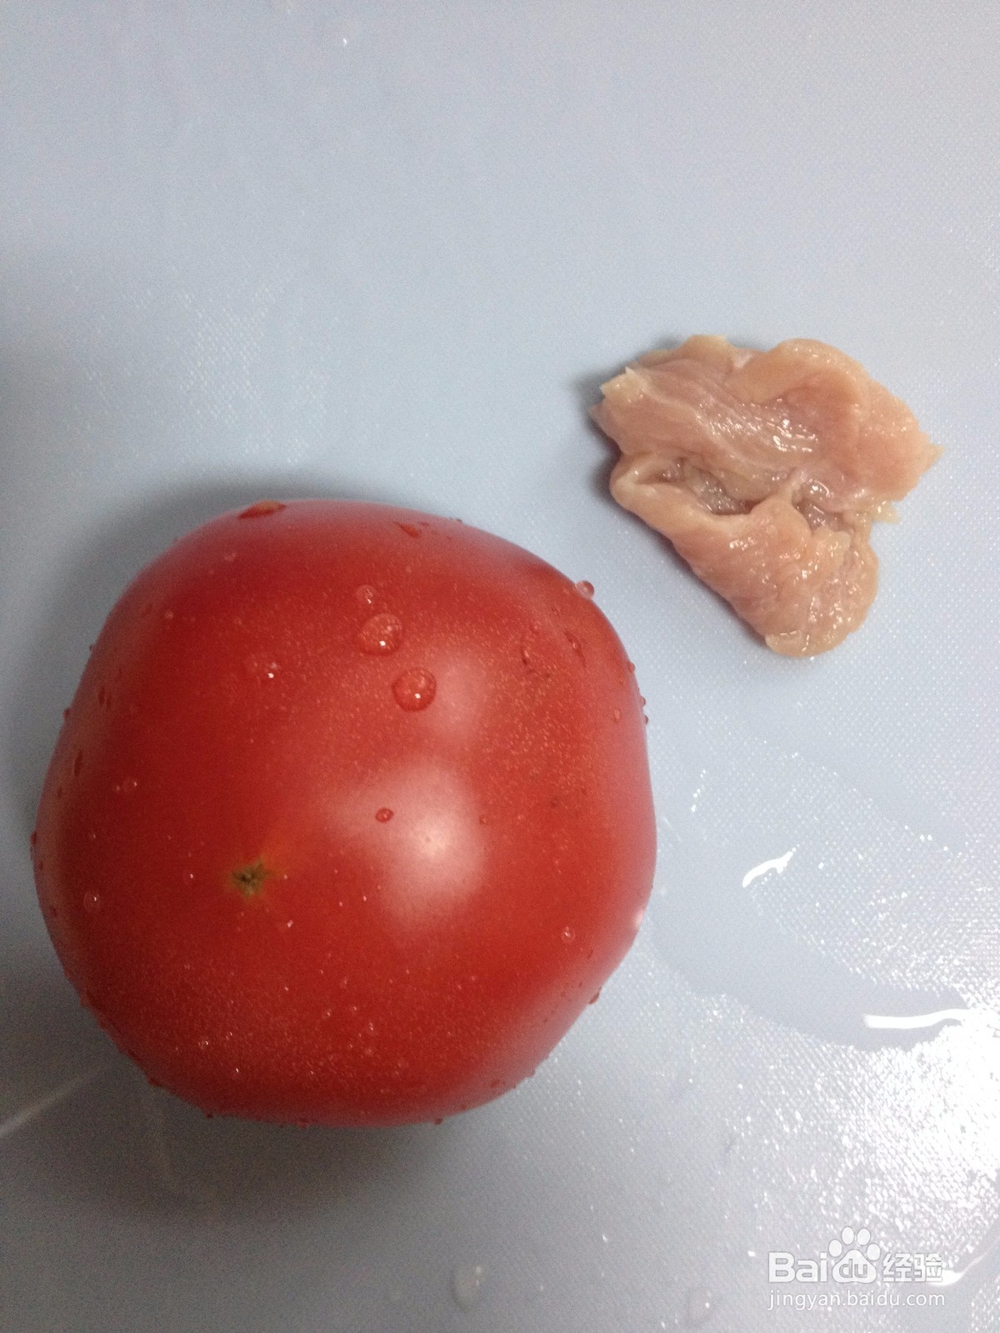 <b>宝宝辅食 西红柿 猪肉泥米糊的做法</b>